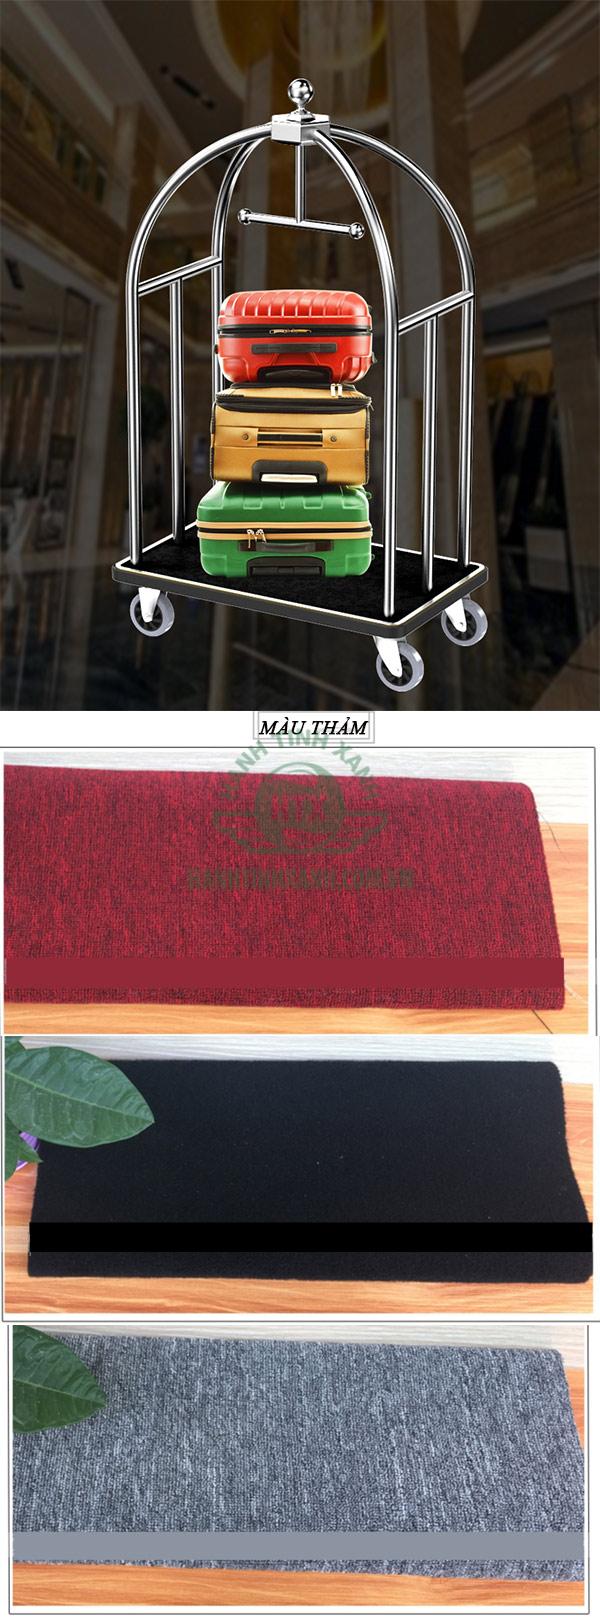 Bạn có thể lựa chọn các tông màu thảm nhung trải sàn để đồ